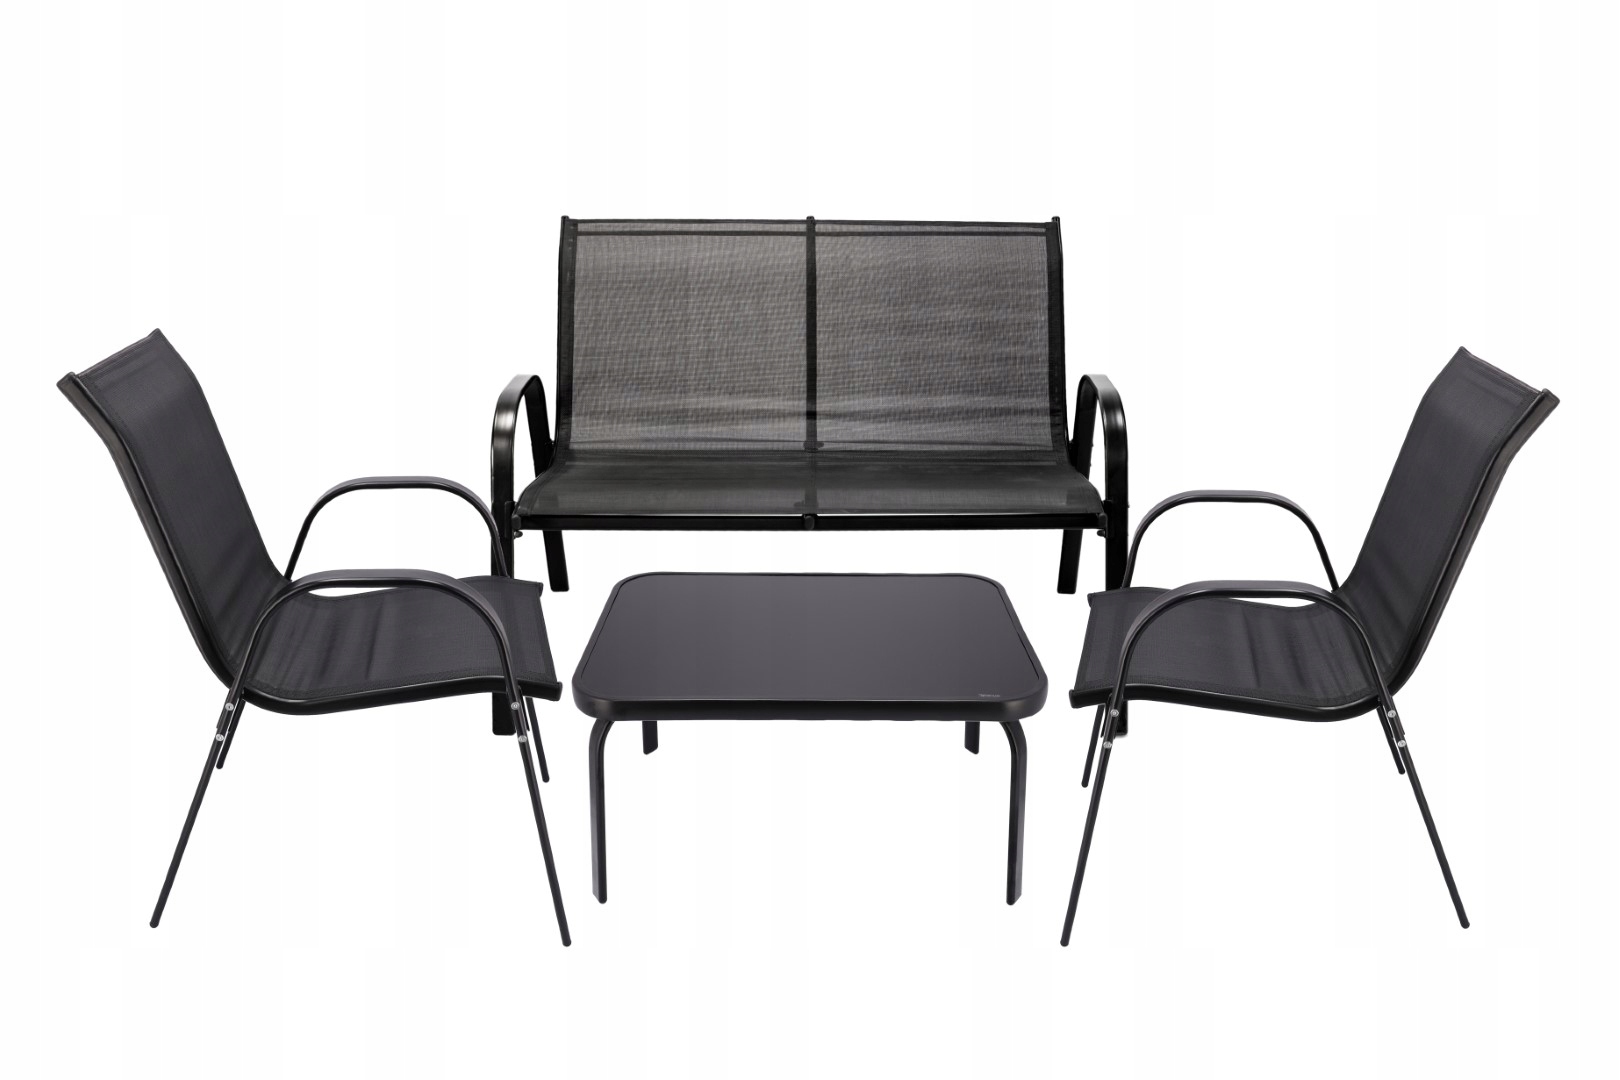 MEBLE OGRODOWE taras zestaw komplet stół krzesł, , OM-967984.5900410967984, Przeznaczenie komplet kawowy